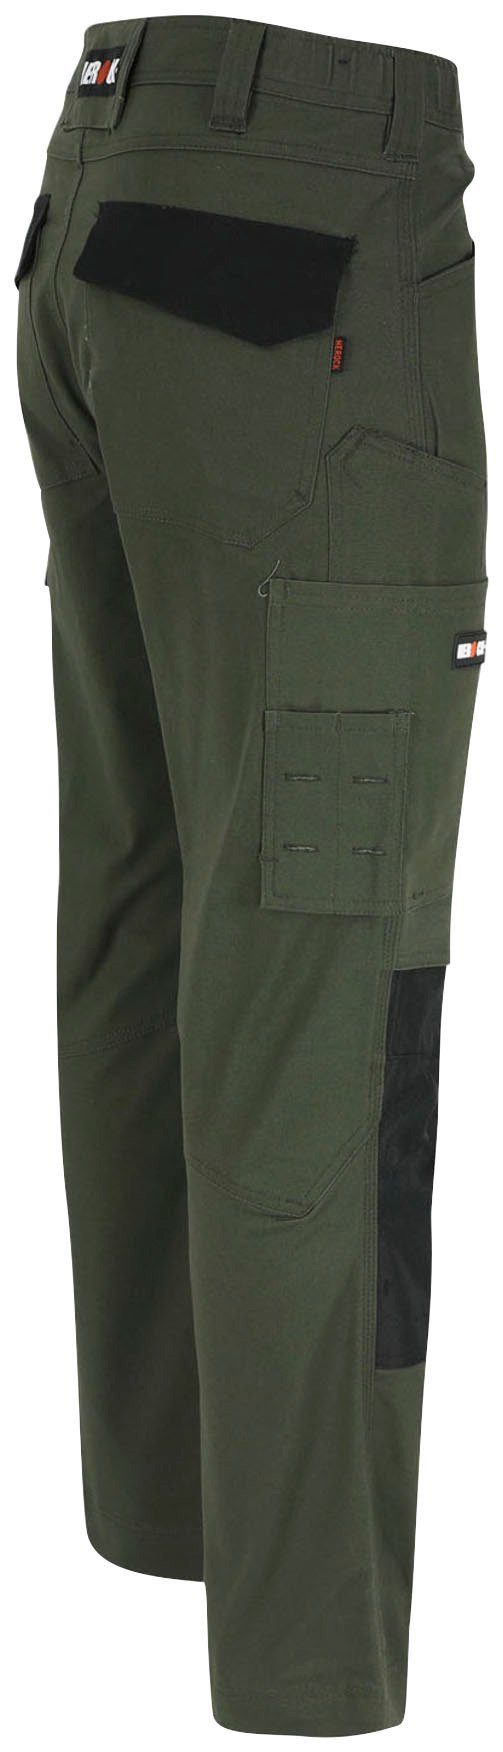 Herock Arbeitshose DERO Slim Fit Passform, khaki 2-Wege-Stretch, Multi-Pocket, wasserabweisend